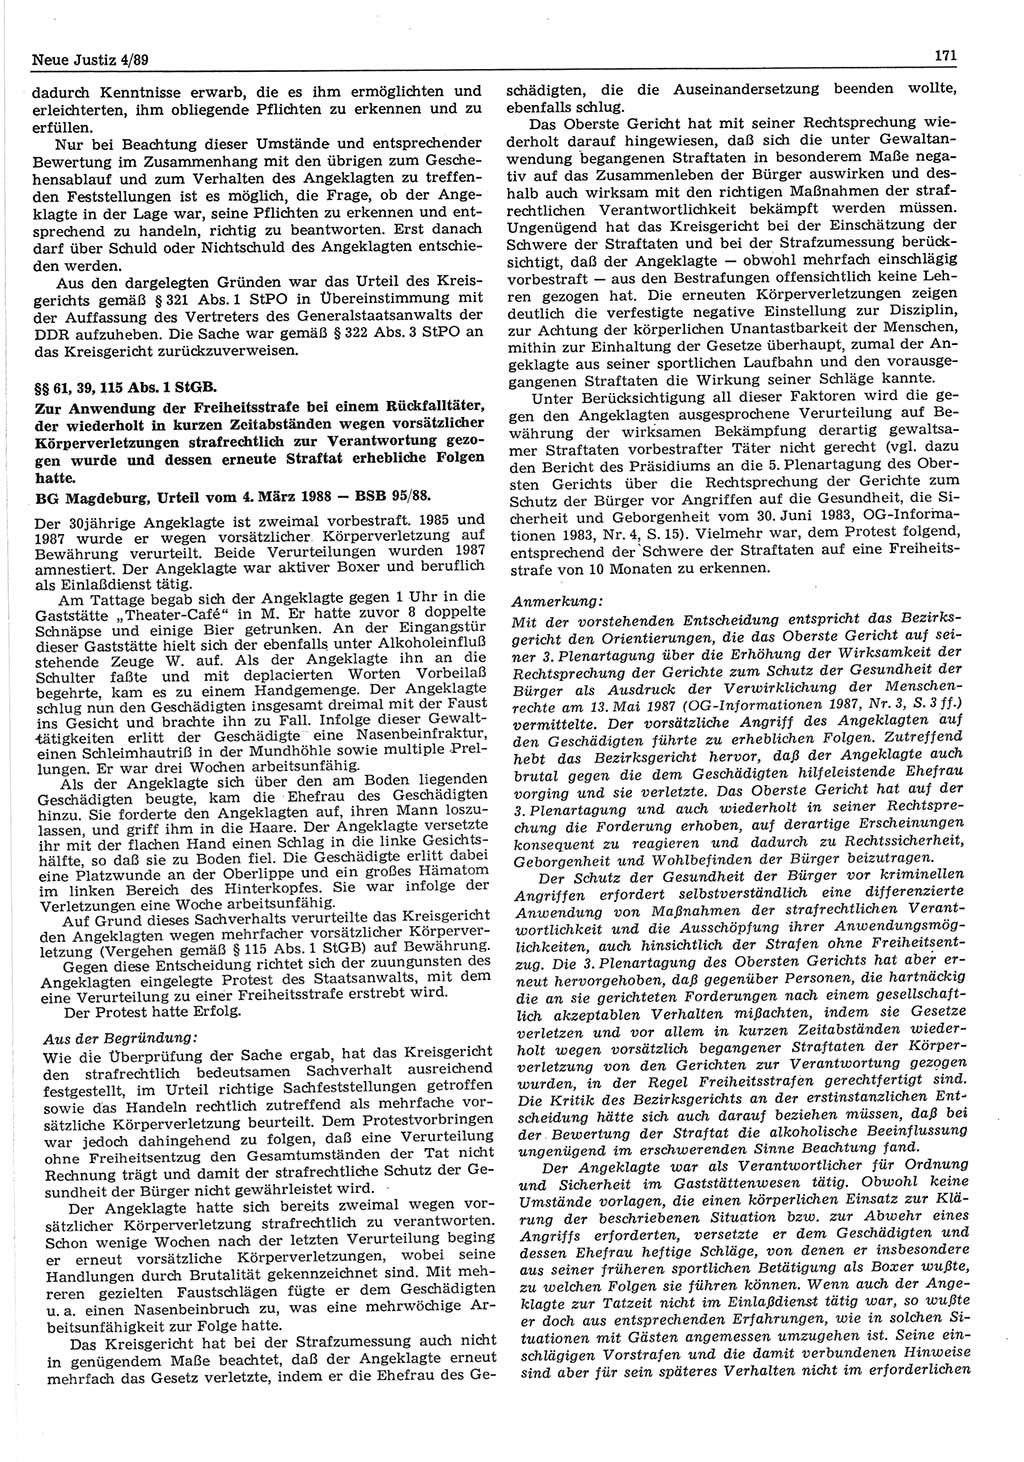 Neue Justiz (NJ), Zeitschrift für sozialistisches Recht und Gesetzlichkeit [Deutsche Demokratische Republik (DDR)], 43. Jahrgang 1989, Seite 171 (NJ DDR 1989, S. 171)